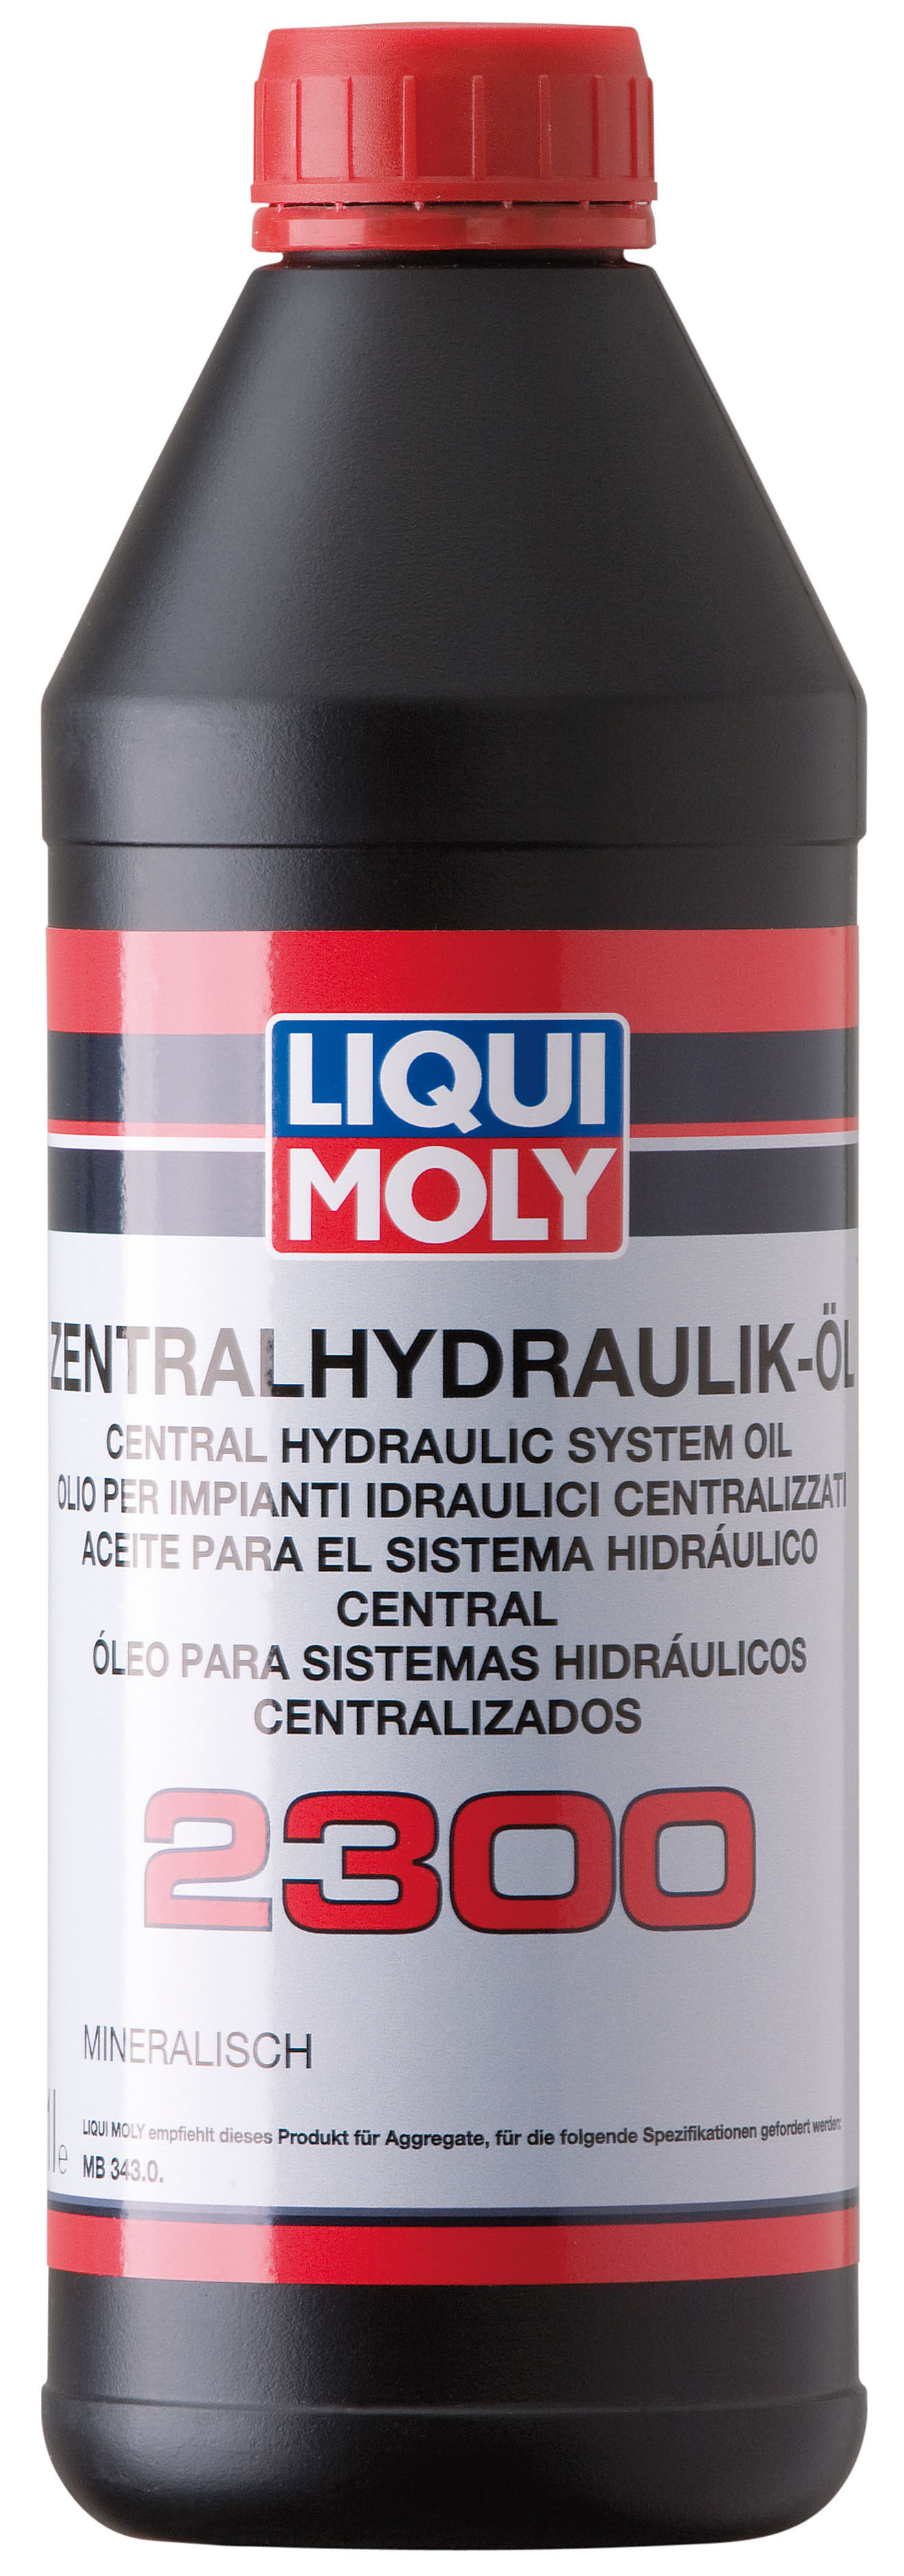 Жидкость гидравлическая минеральная Zentralhydraulik-Oil 2300 1L - Liqui Moly 3665